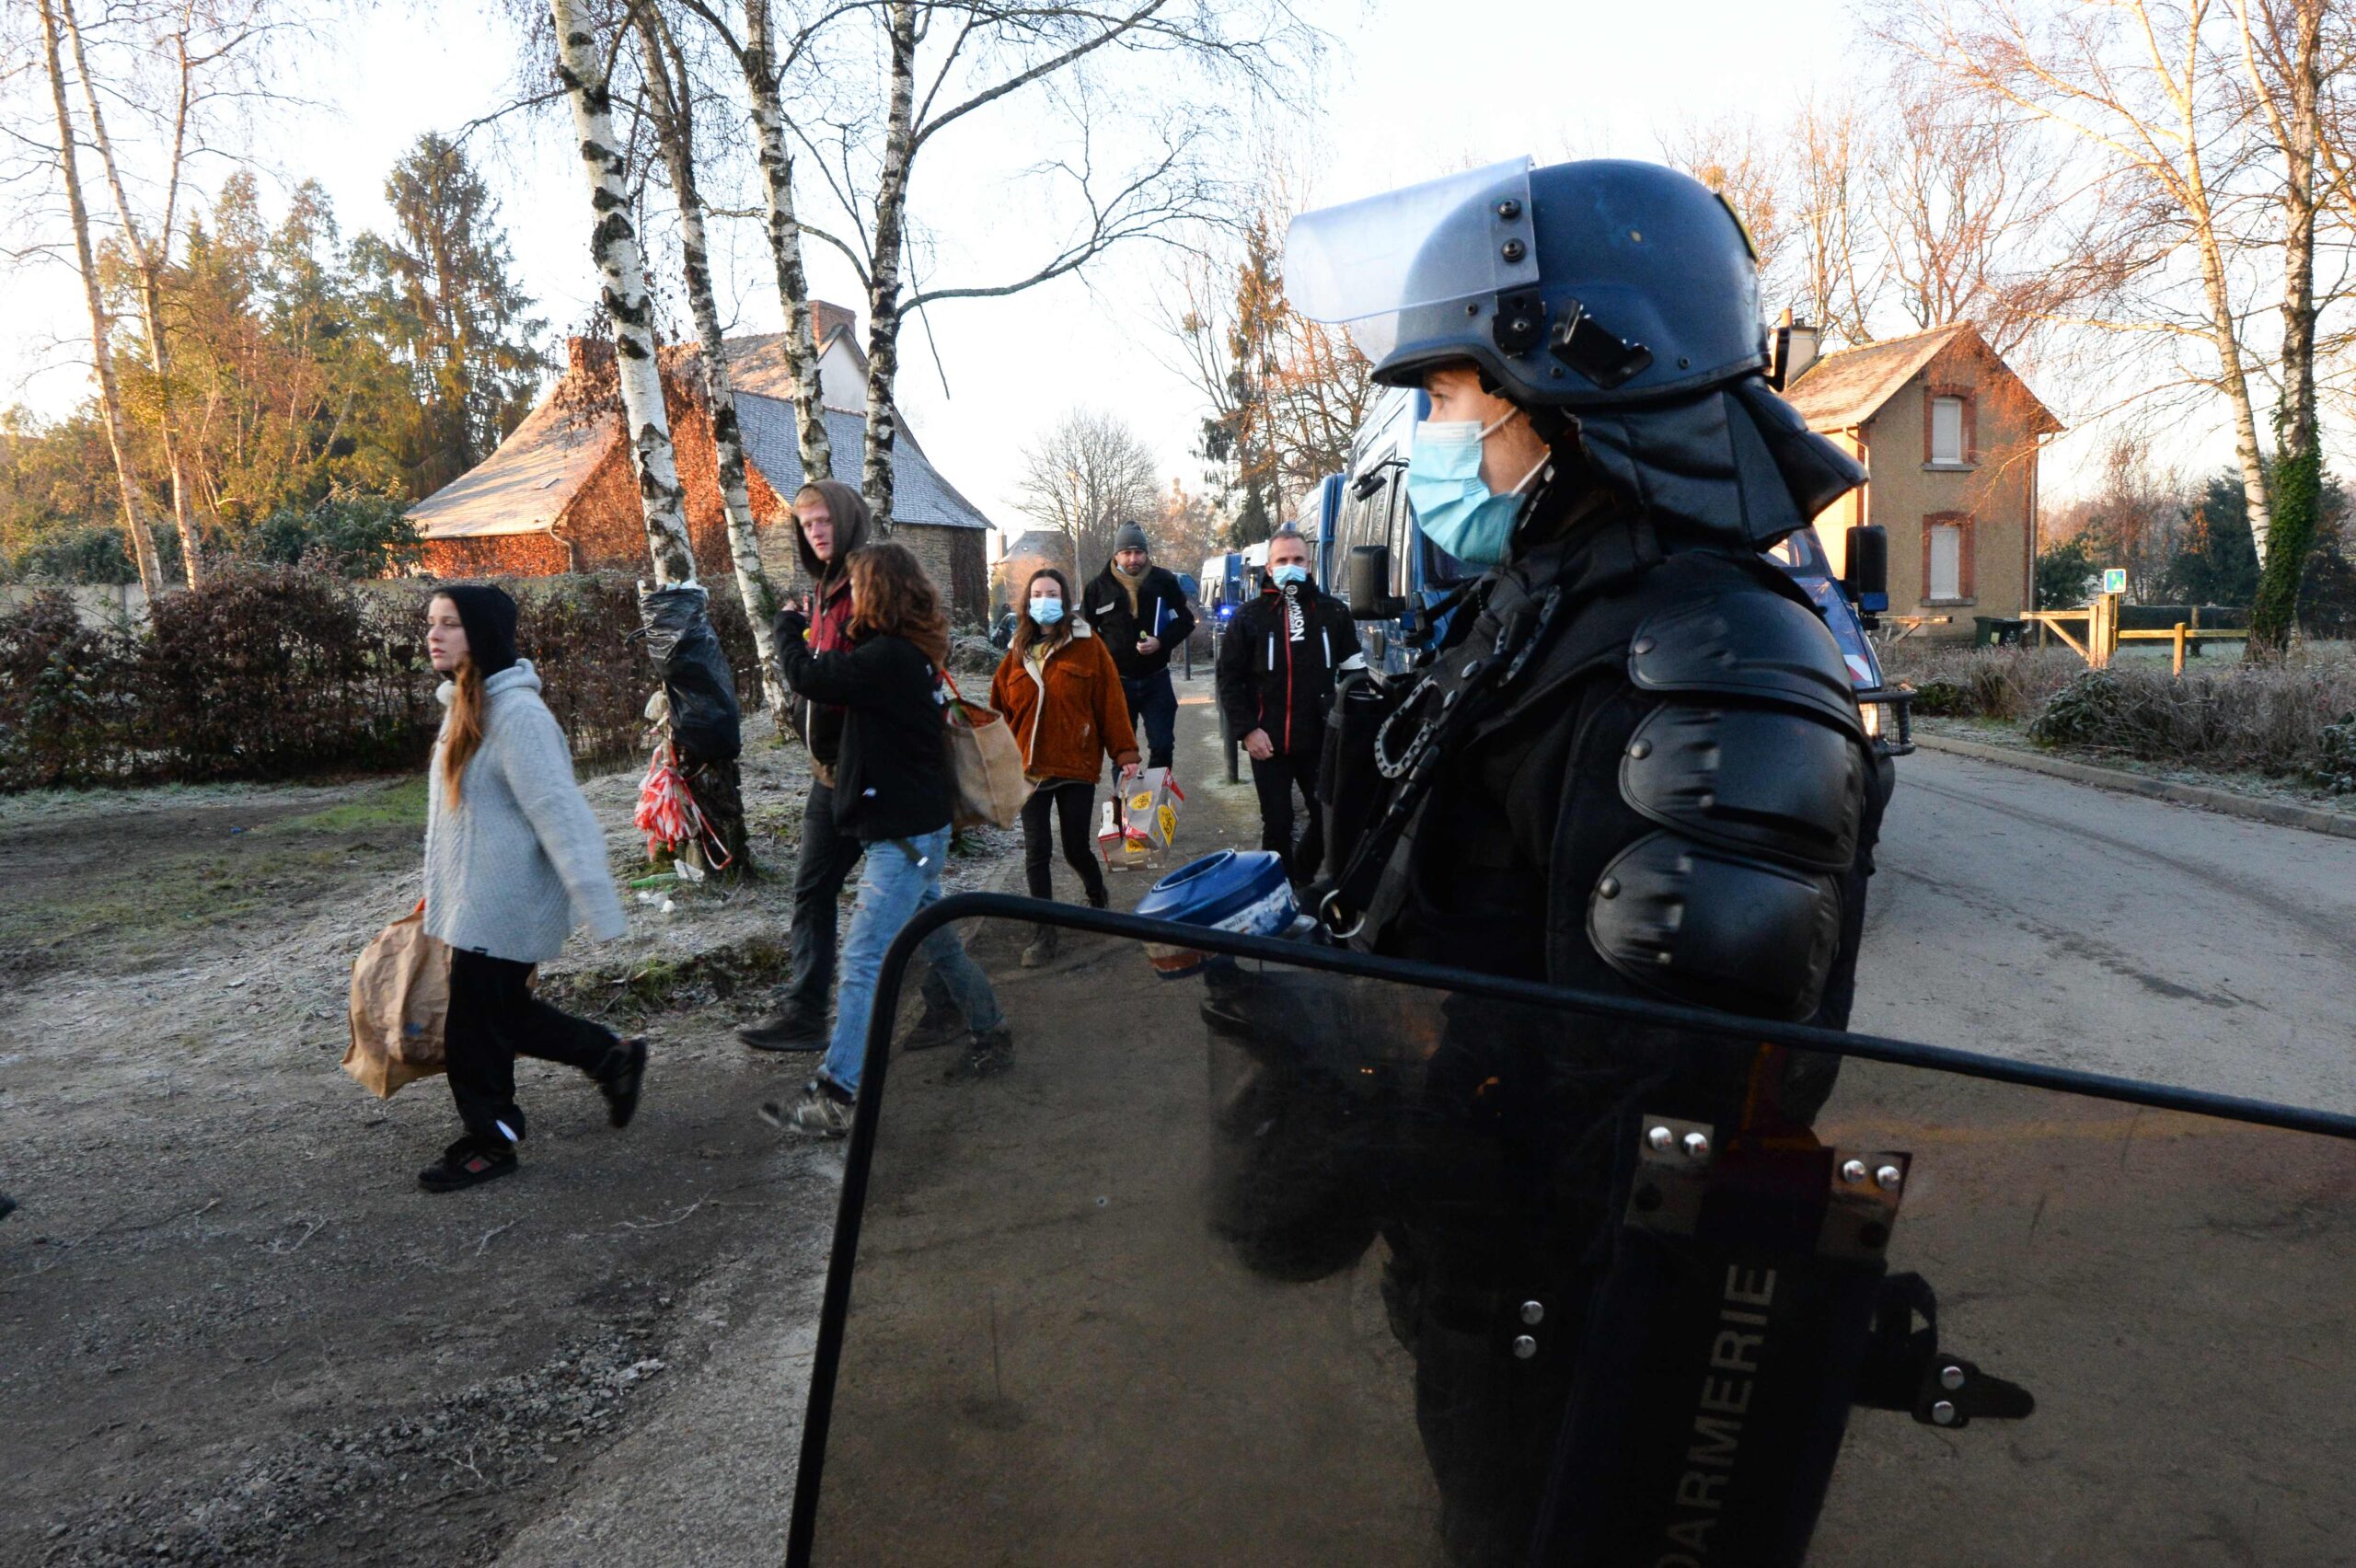 Из-за агрессивного поведения рейверов полиции пришлось применять защитные щиты. Фото JEAN-FRANCOIS MONIER / AFP/Scanpix/Leta